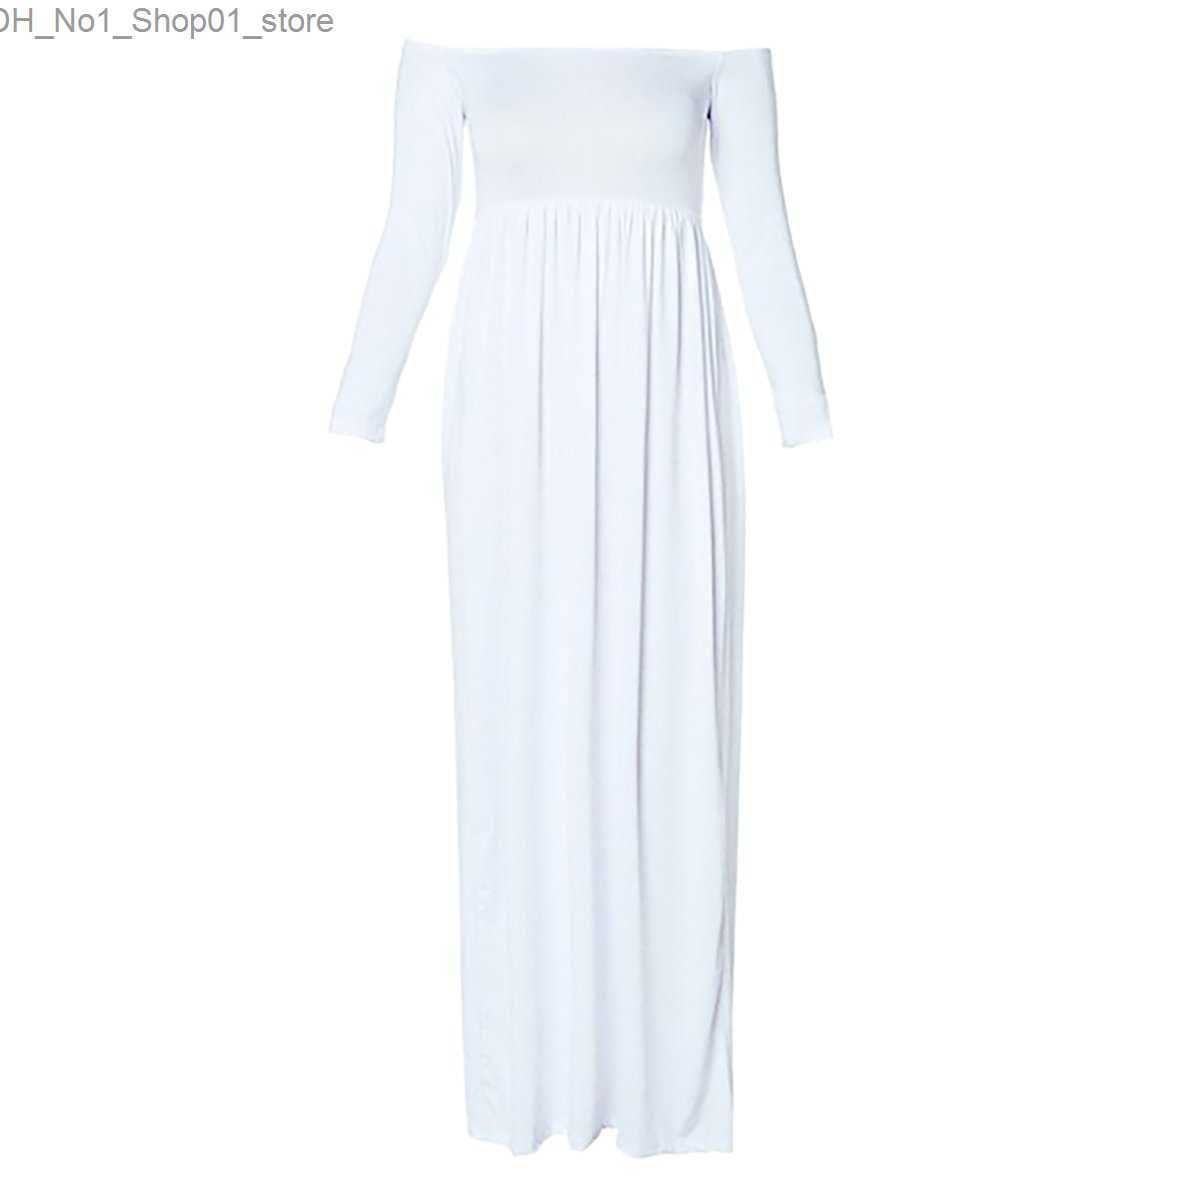 1 x robe blanche